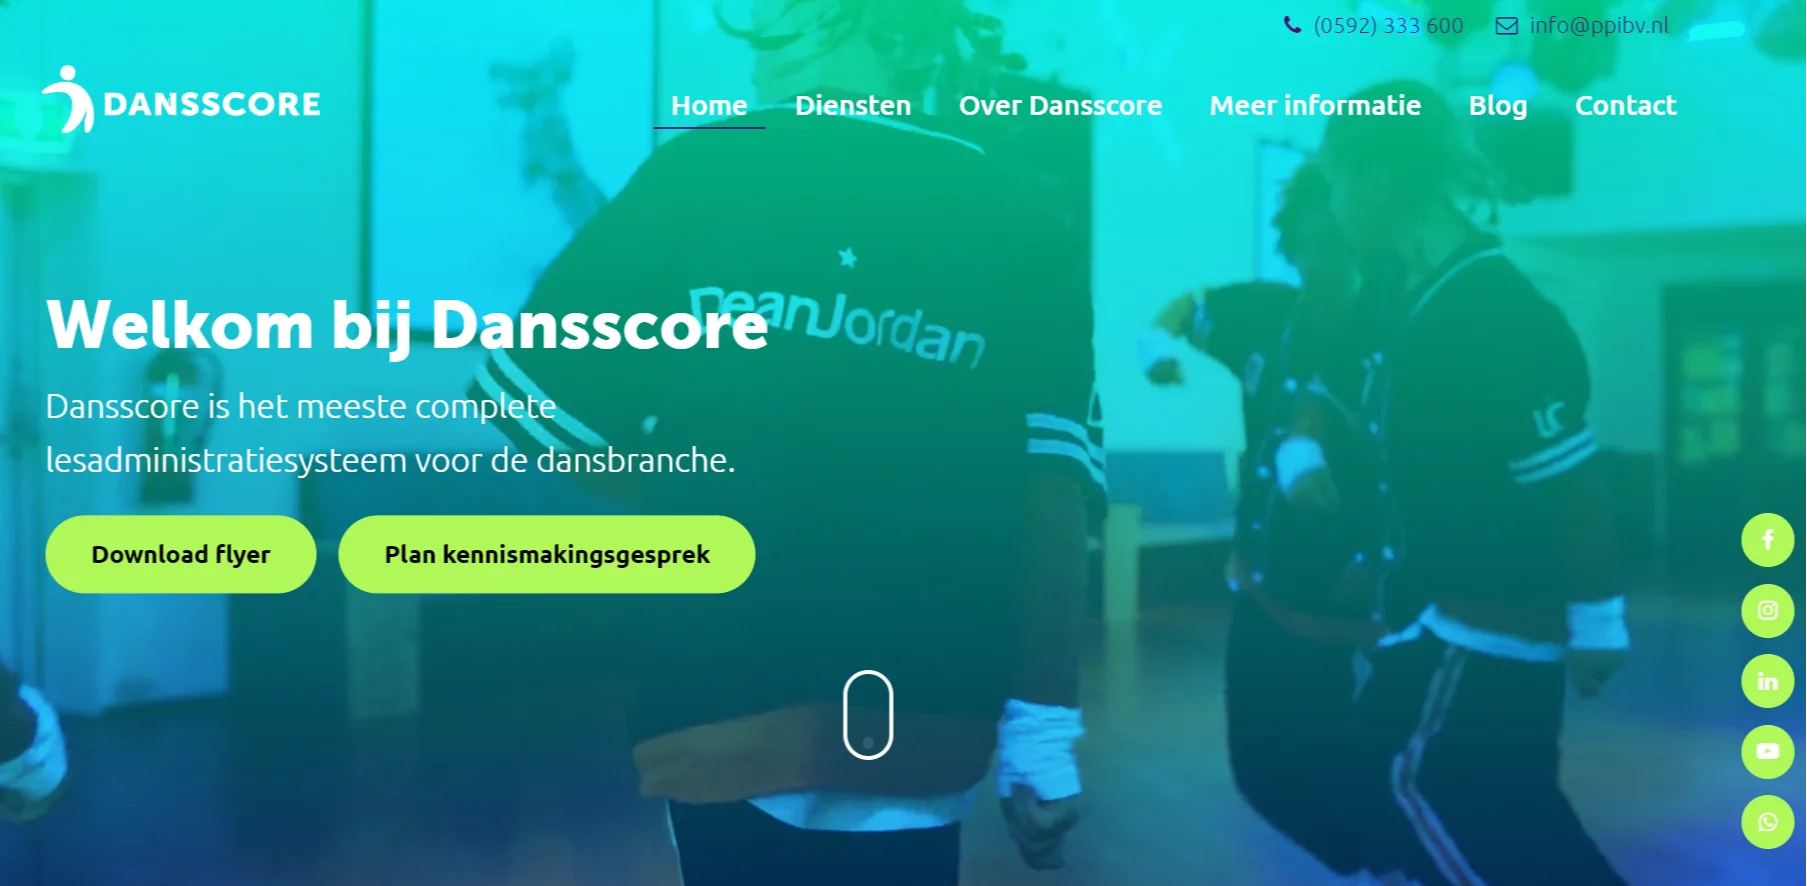 Dansscore lanceert vernieuwde website 